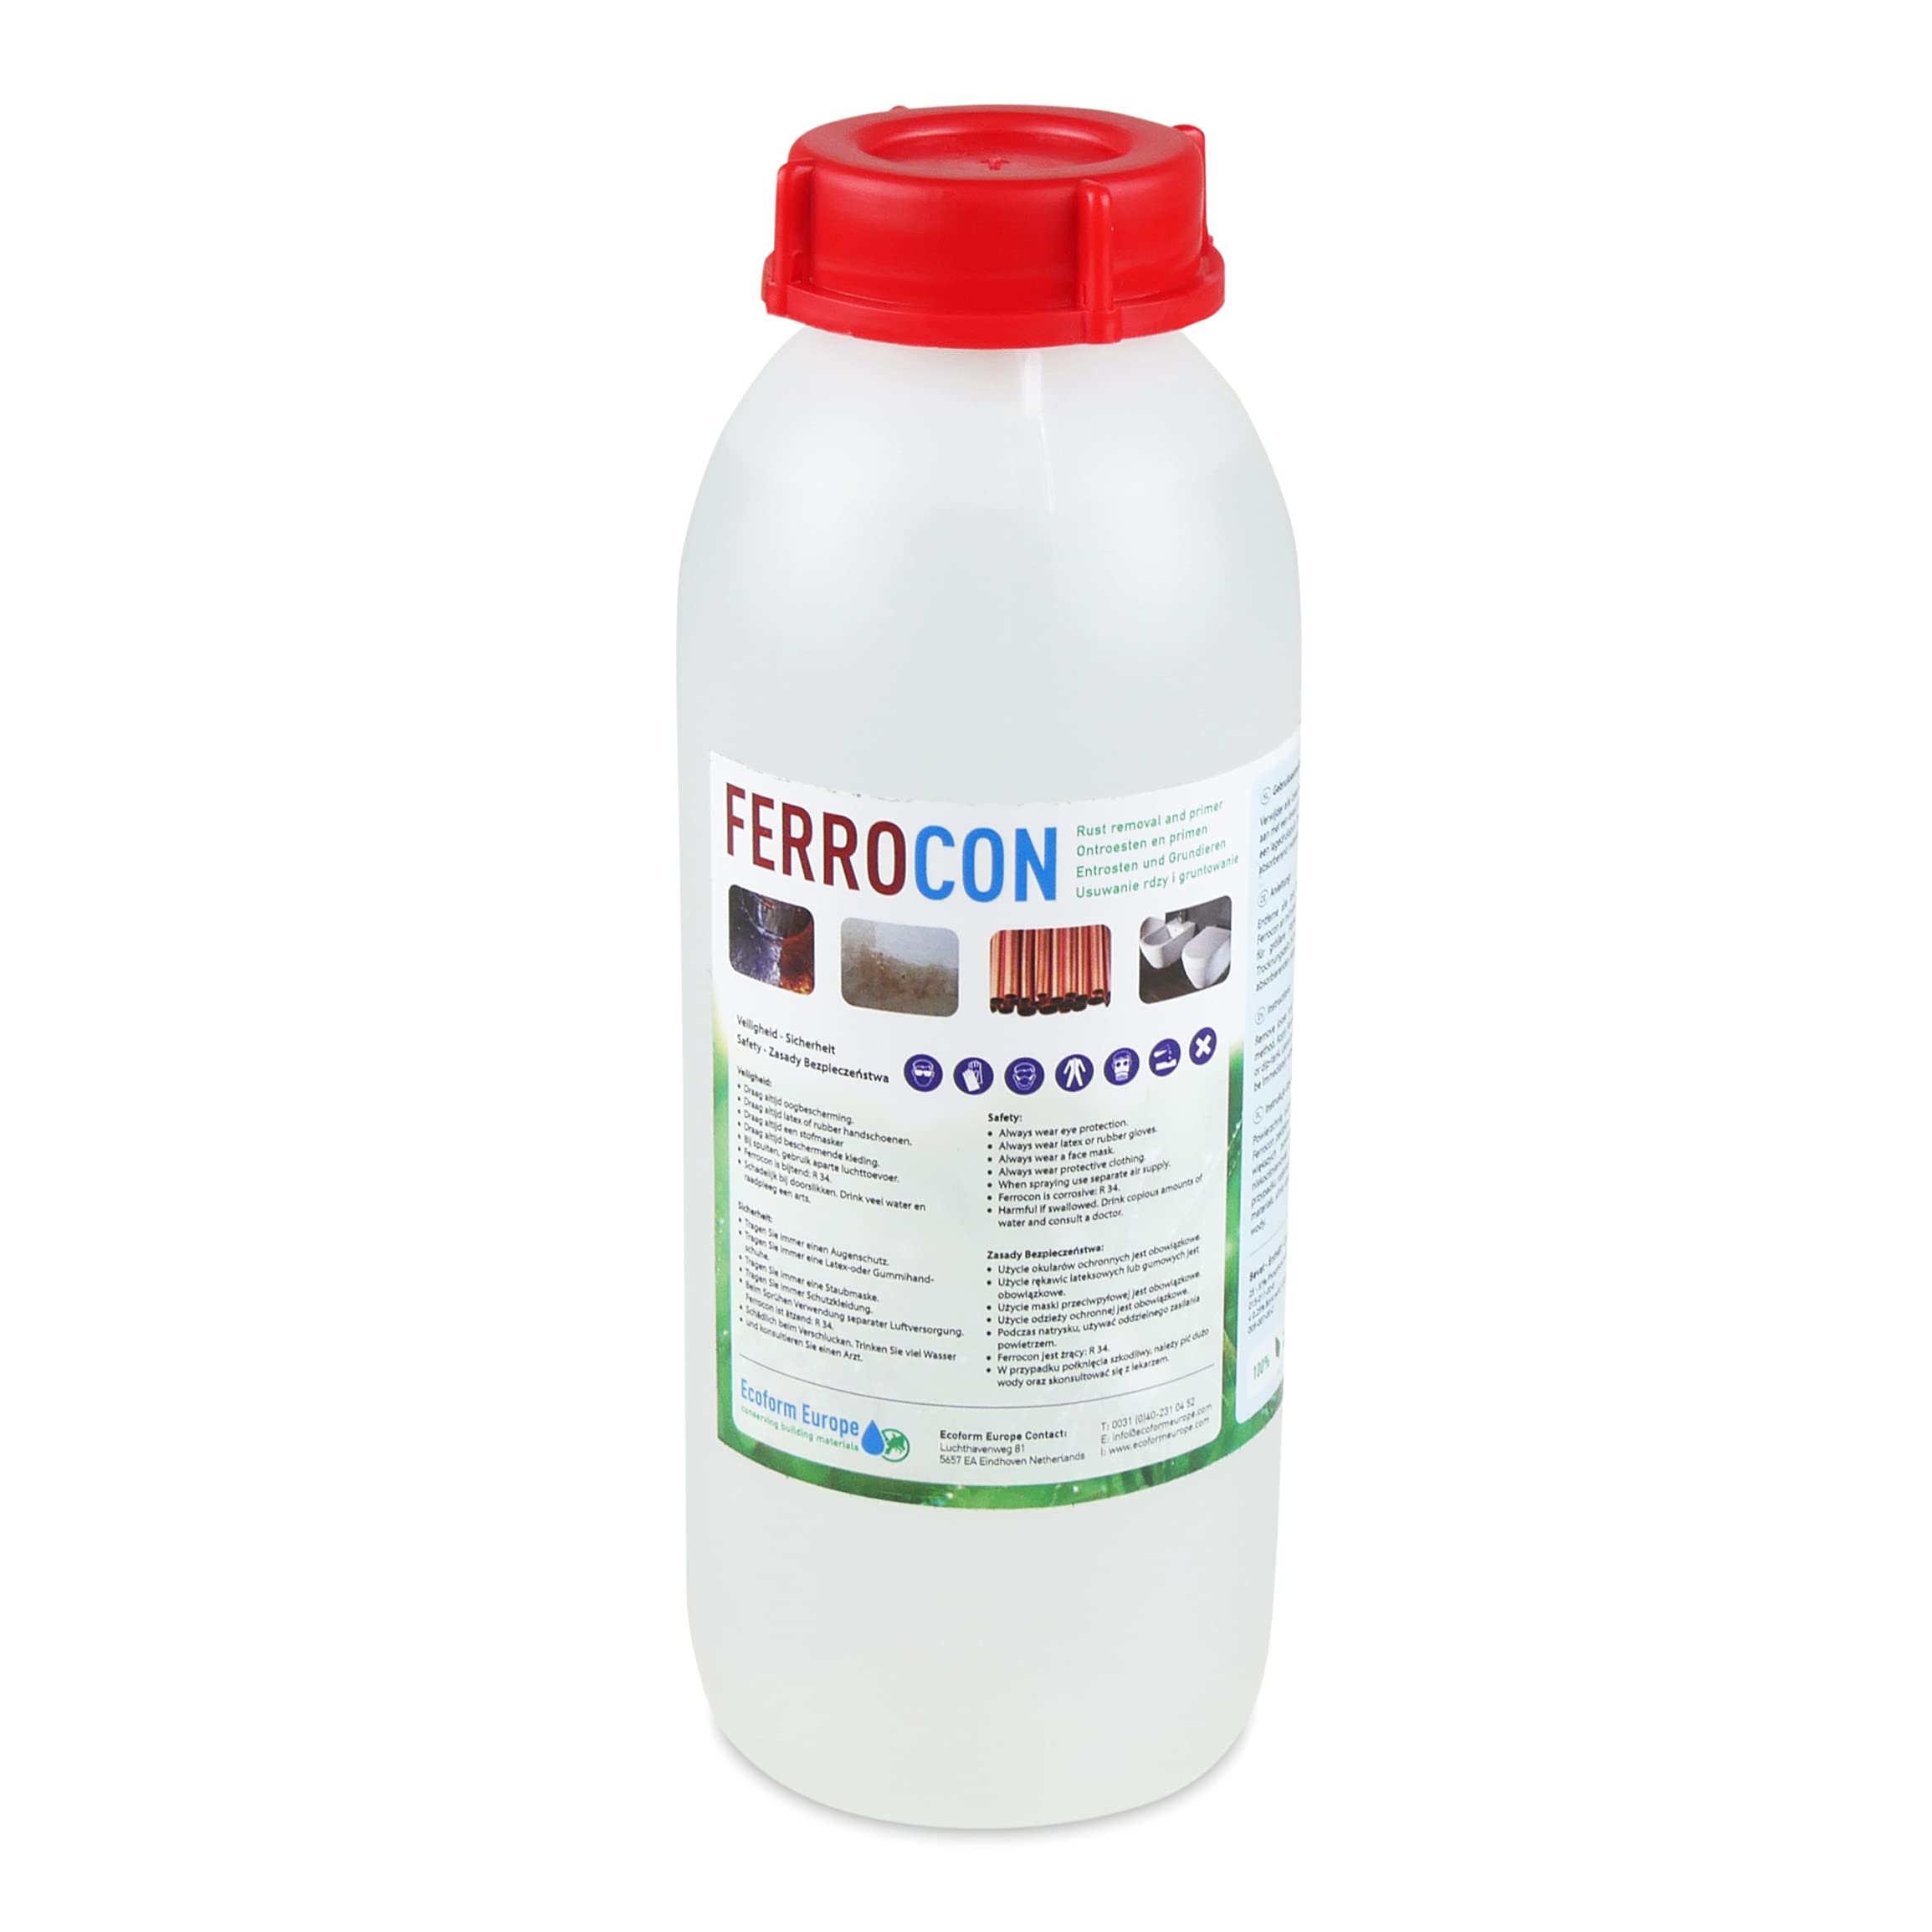 Ecoform Ferrocon Rostumwandler - Rostlöser - Rostentferner für Auto, Haus, Garten - Bestens geeignet für Terrassenplatten - 1 Liter